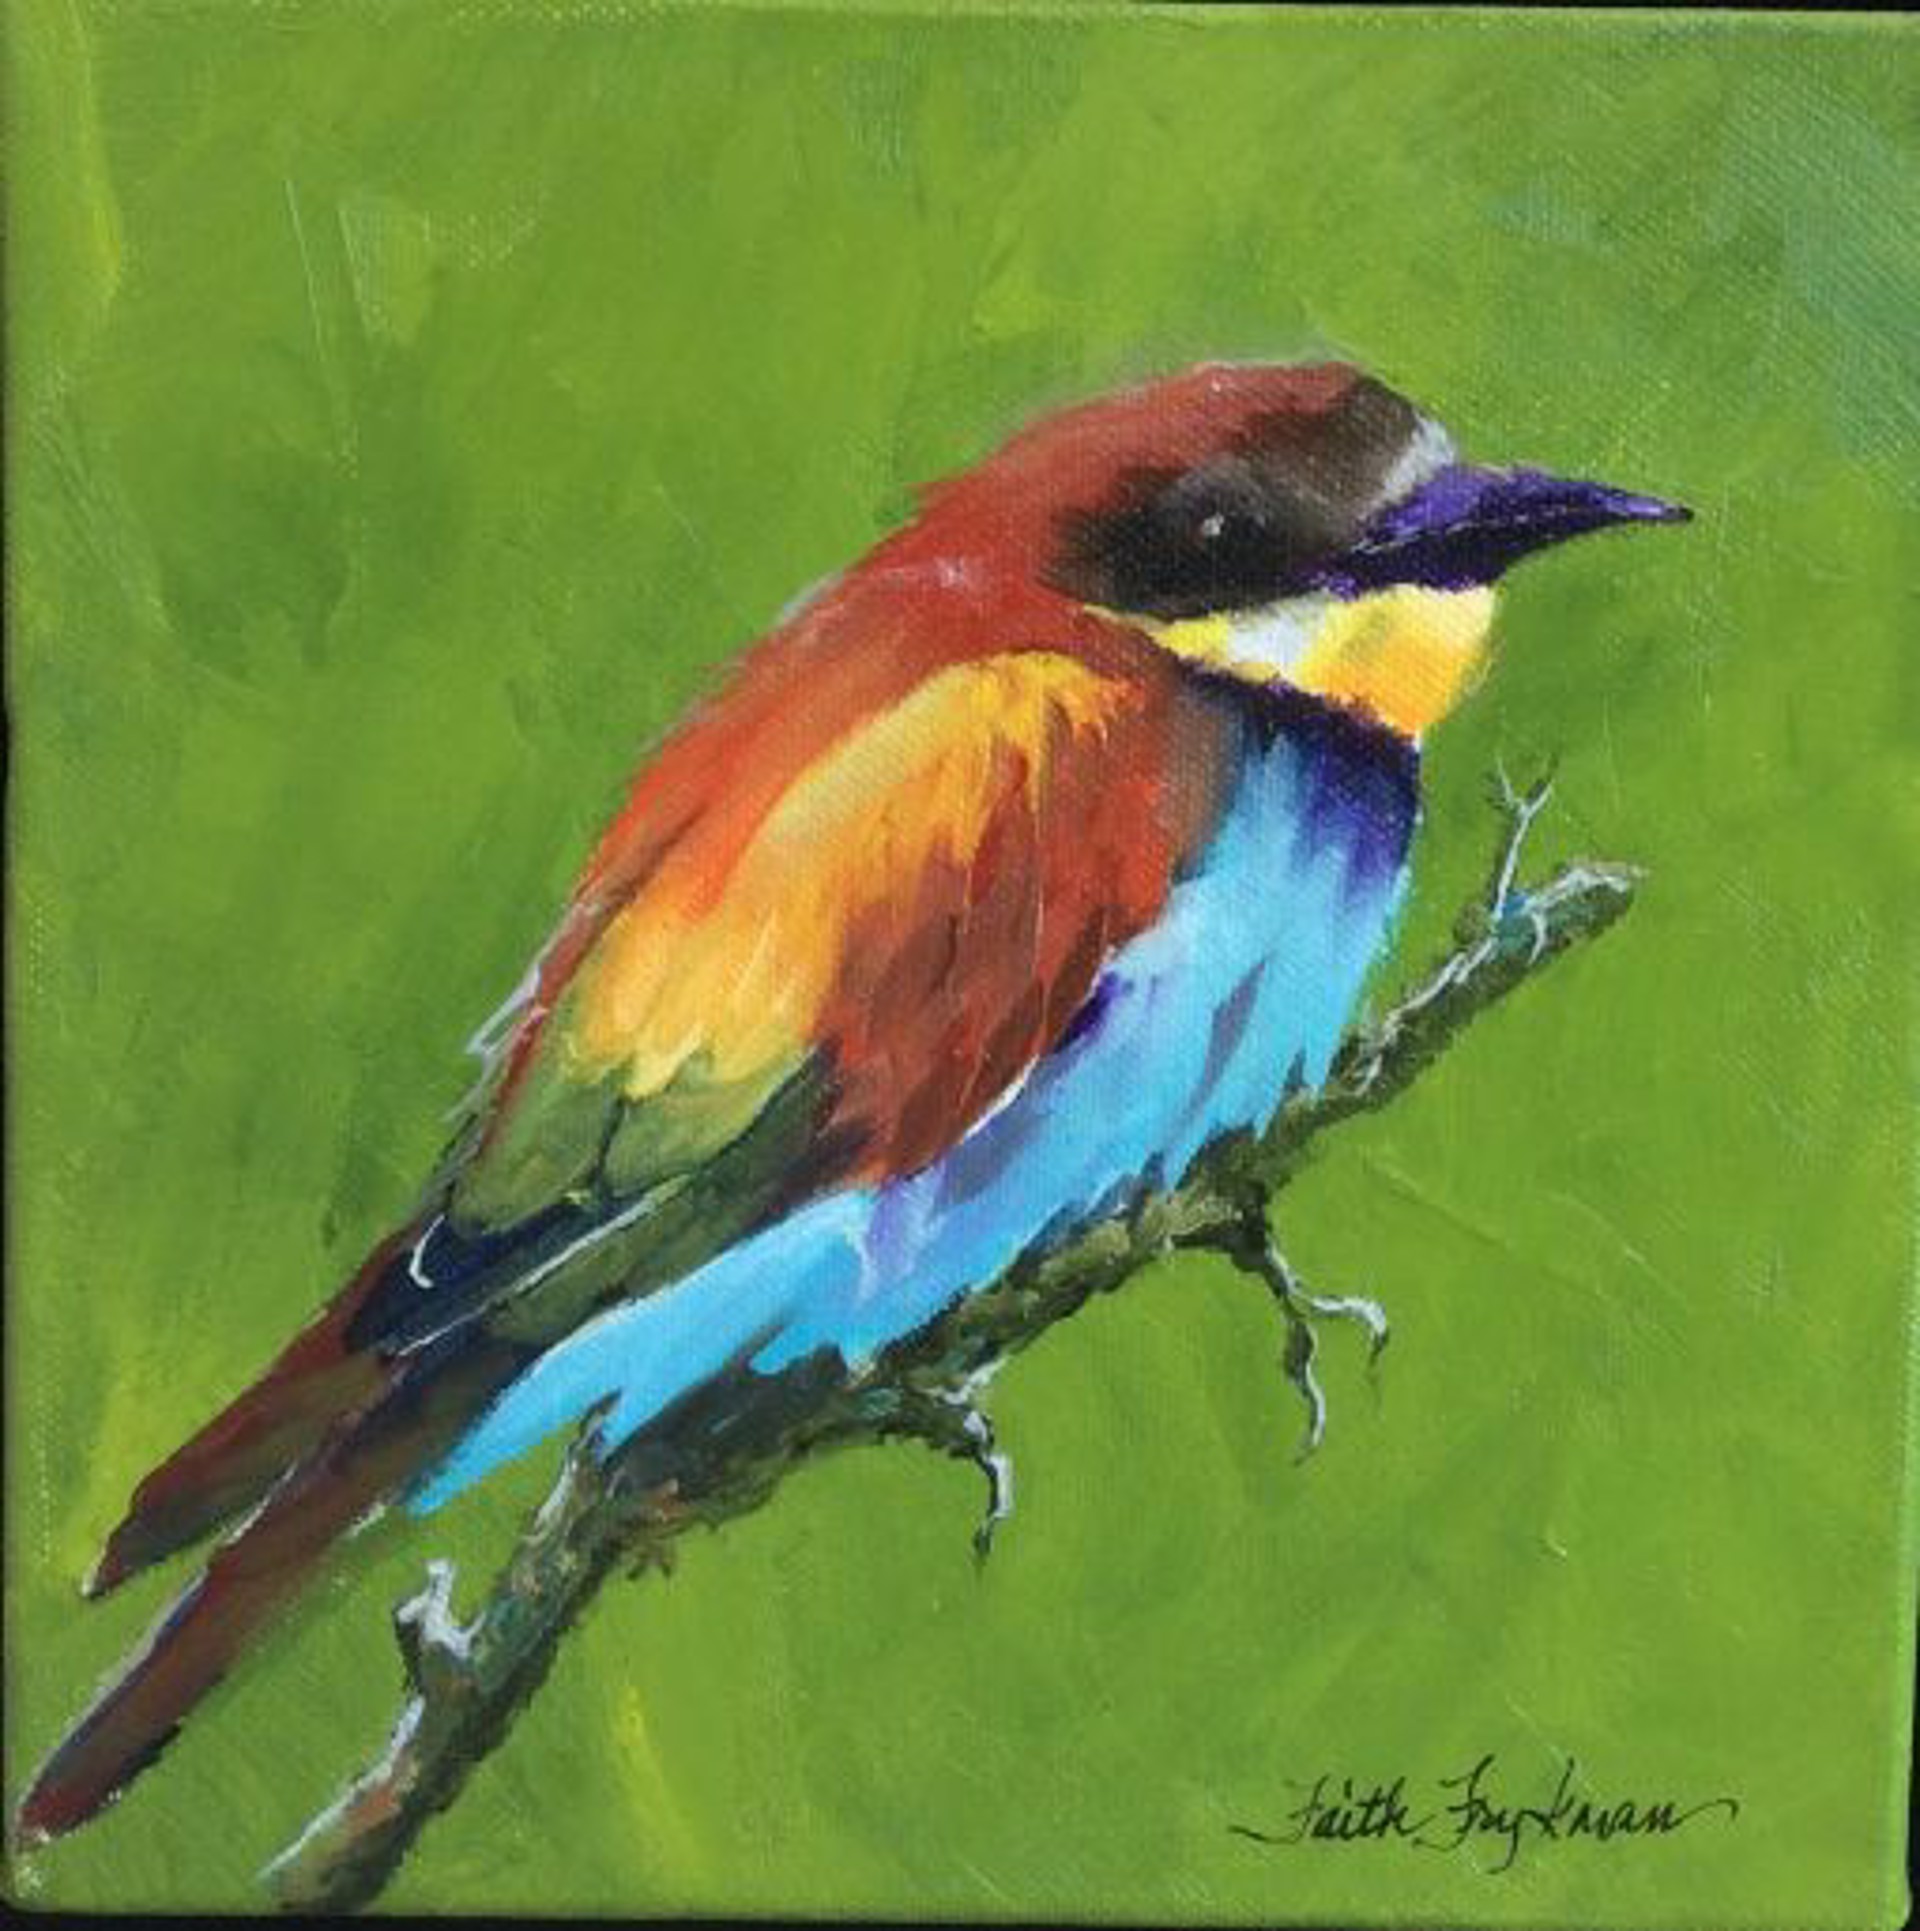 European Bee-eater, by Faith Frykman